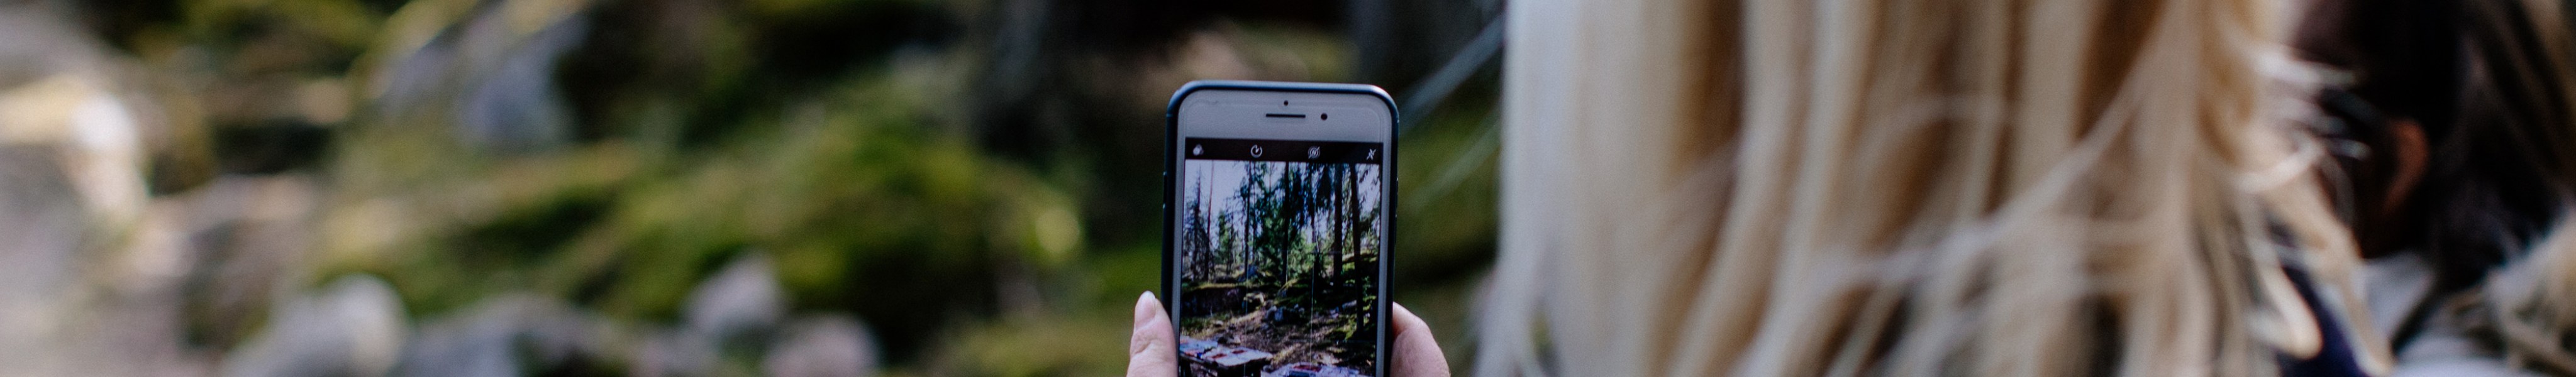 Nainen selin katsojaan kuvaamassa kännykkäkameralla edessään olevaa metsää.